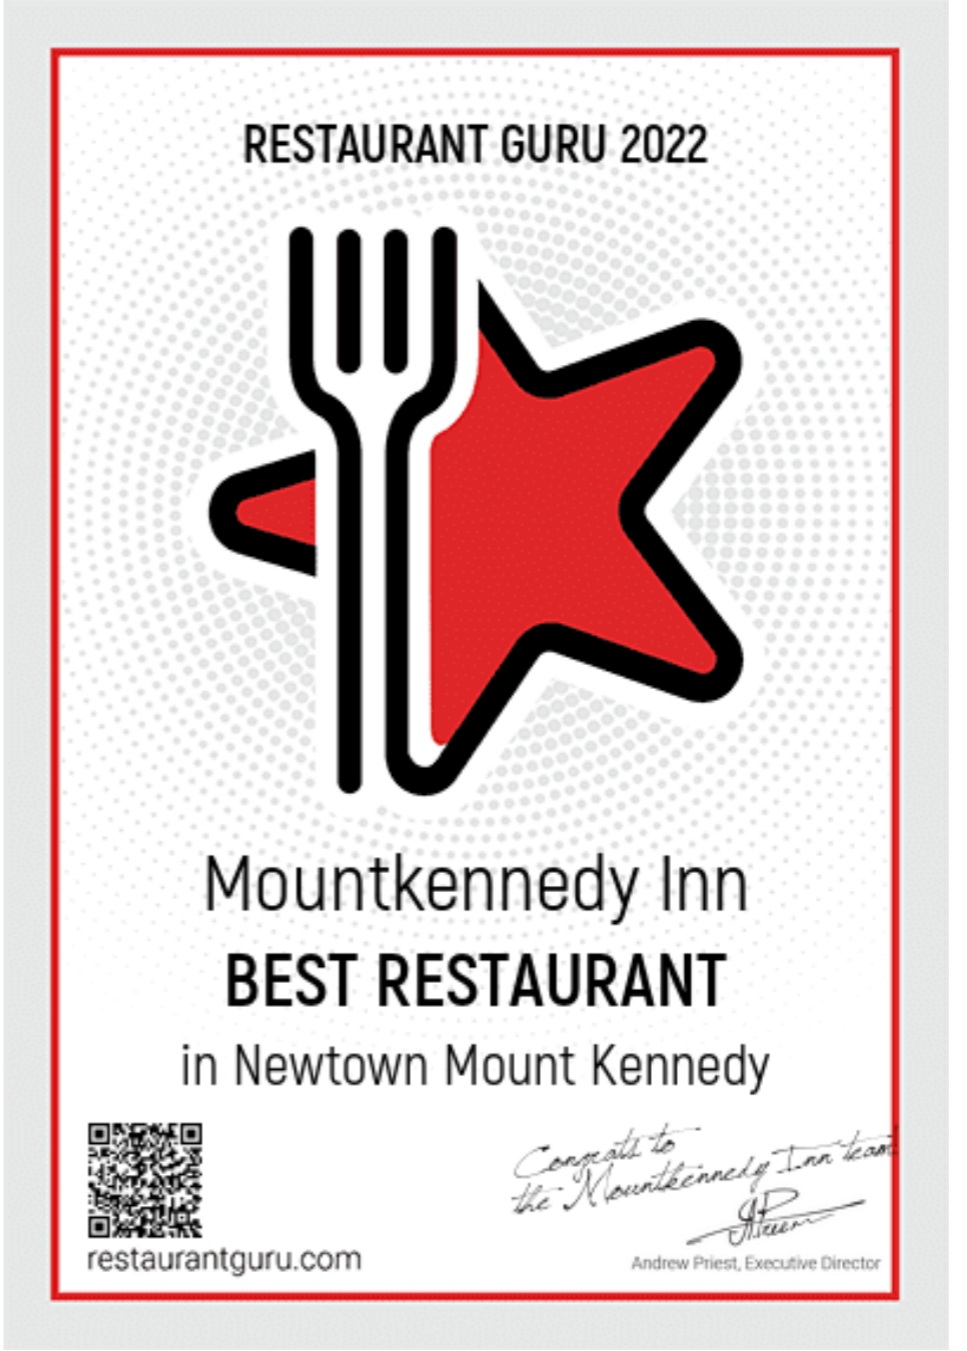 Best Restaurant Award